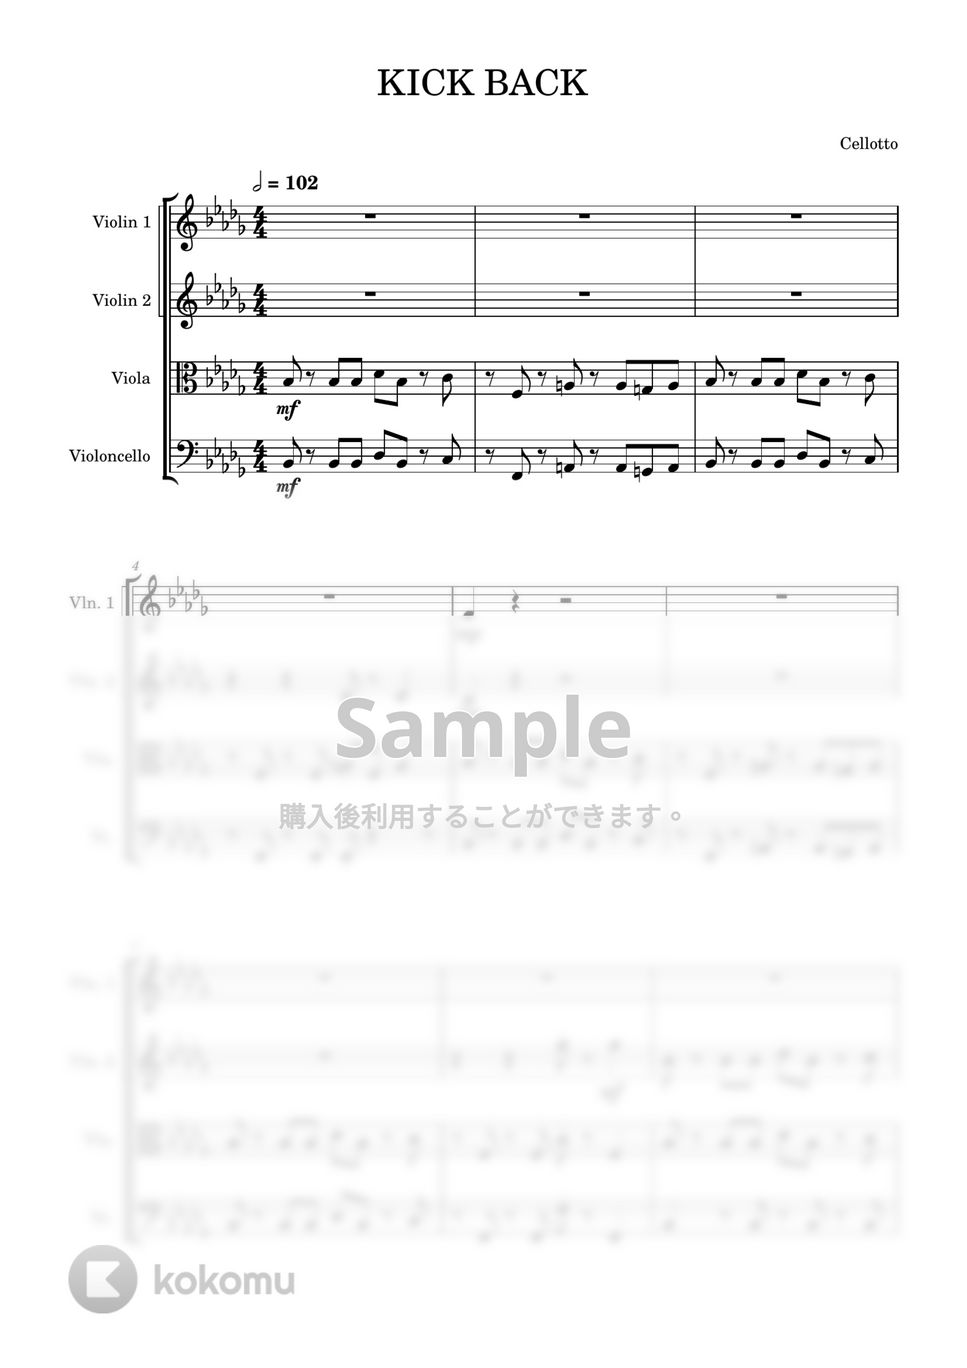 米津玄師 - KICK BACK (弦楽四重奏) by Cellotto